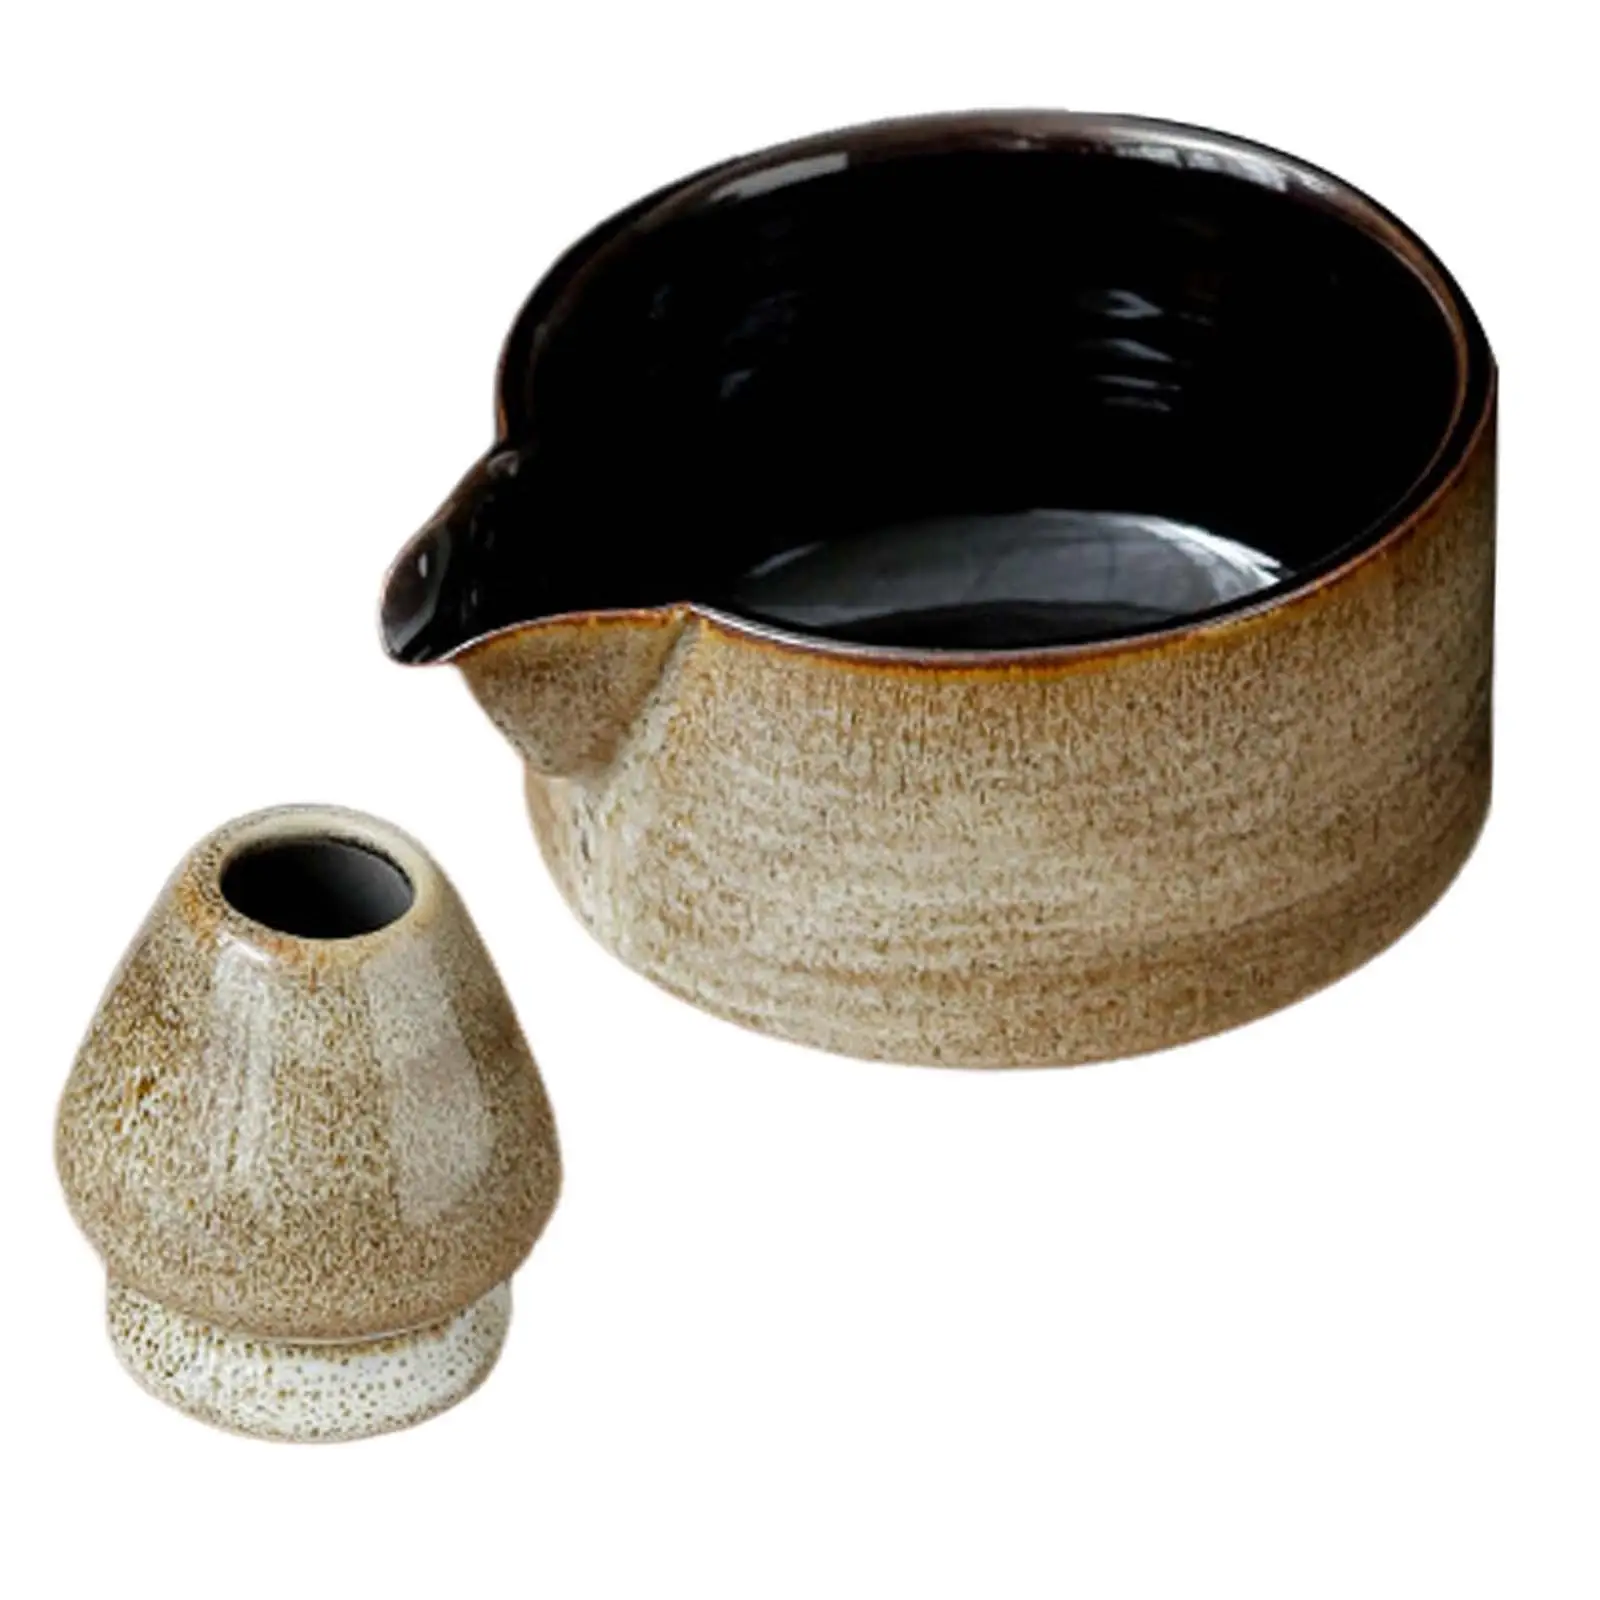 2Pcs Handmade Modern Ceramic Japanese Tea Ceremony for Tea Lovers